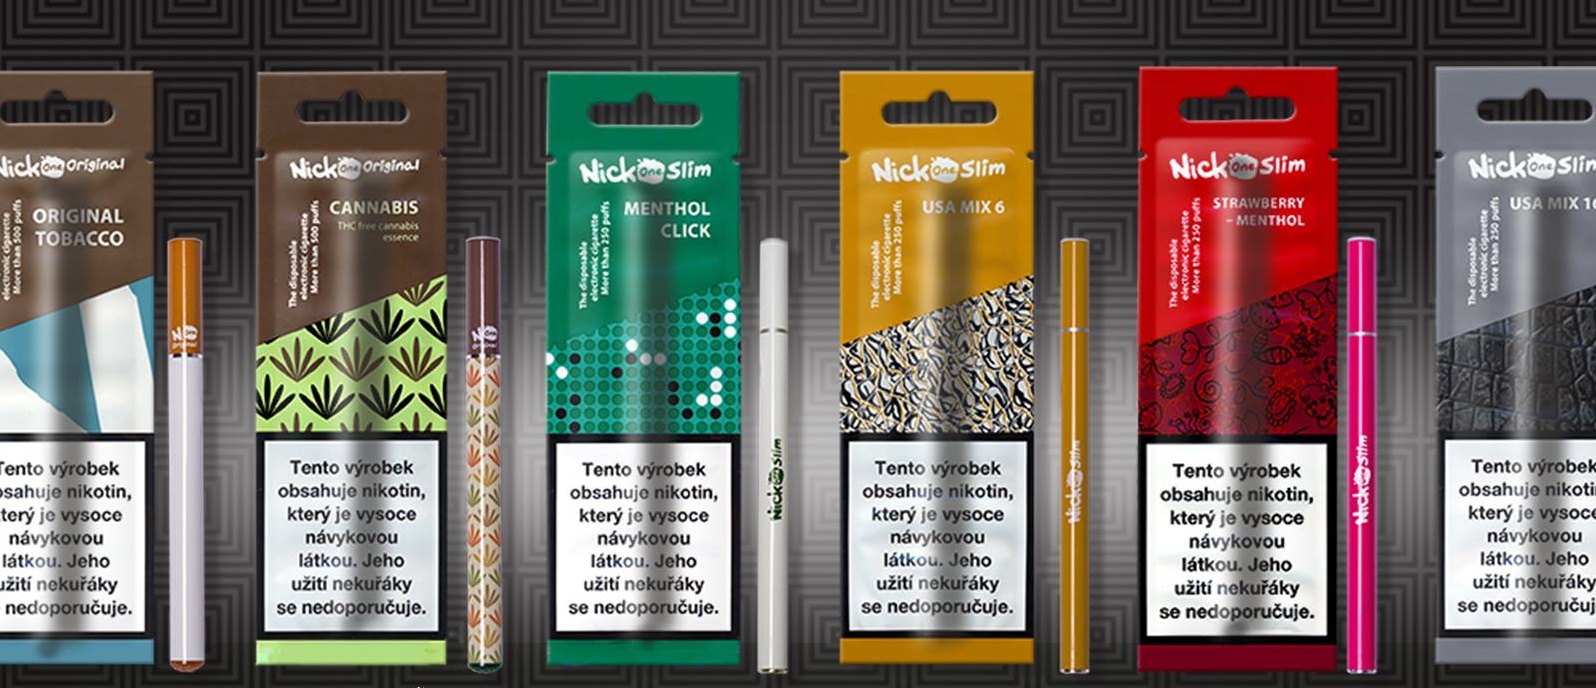 jednorazove-elektronicke-cigarety-nick-one-slim